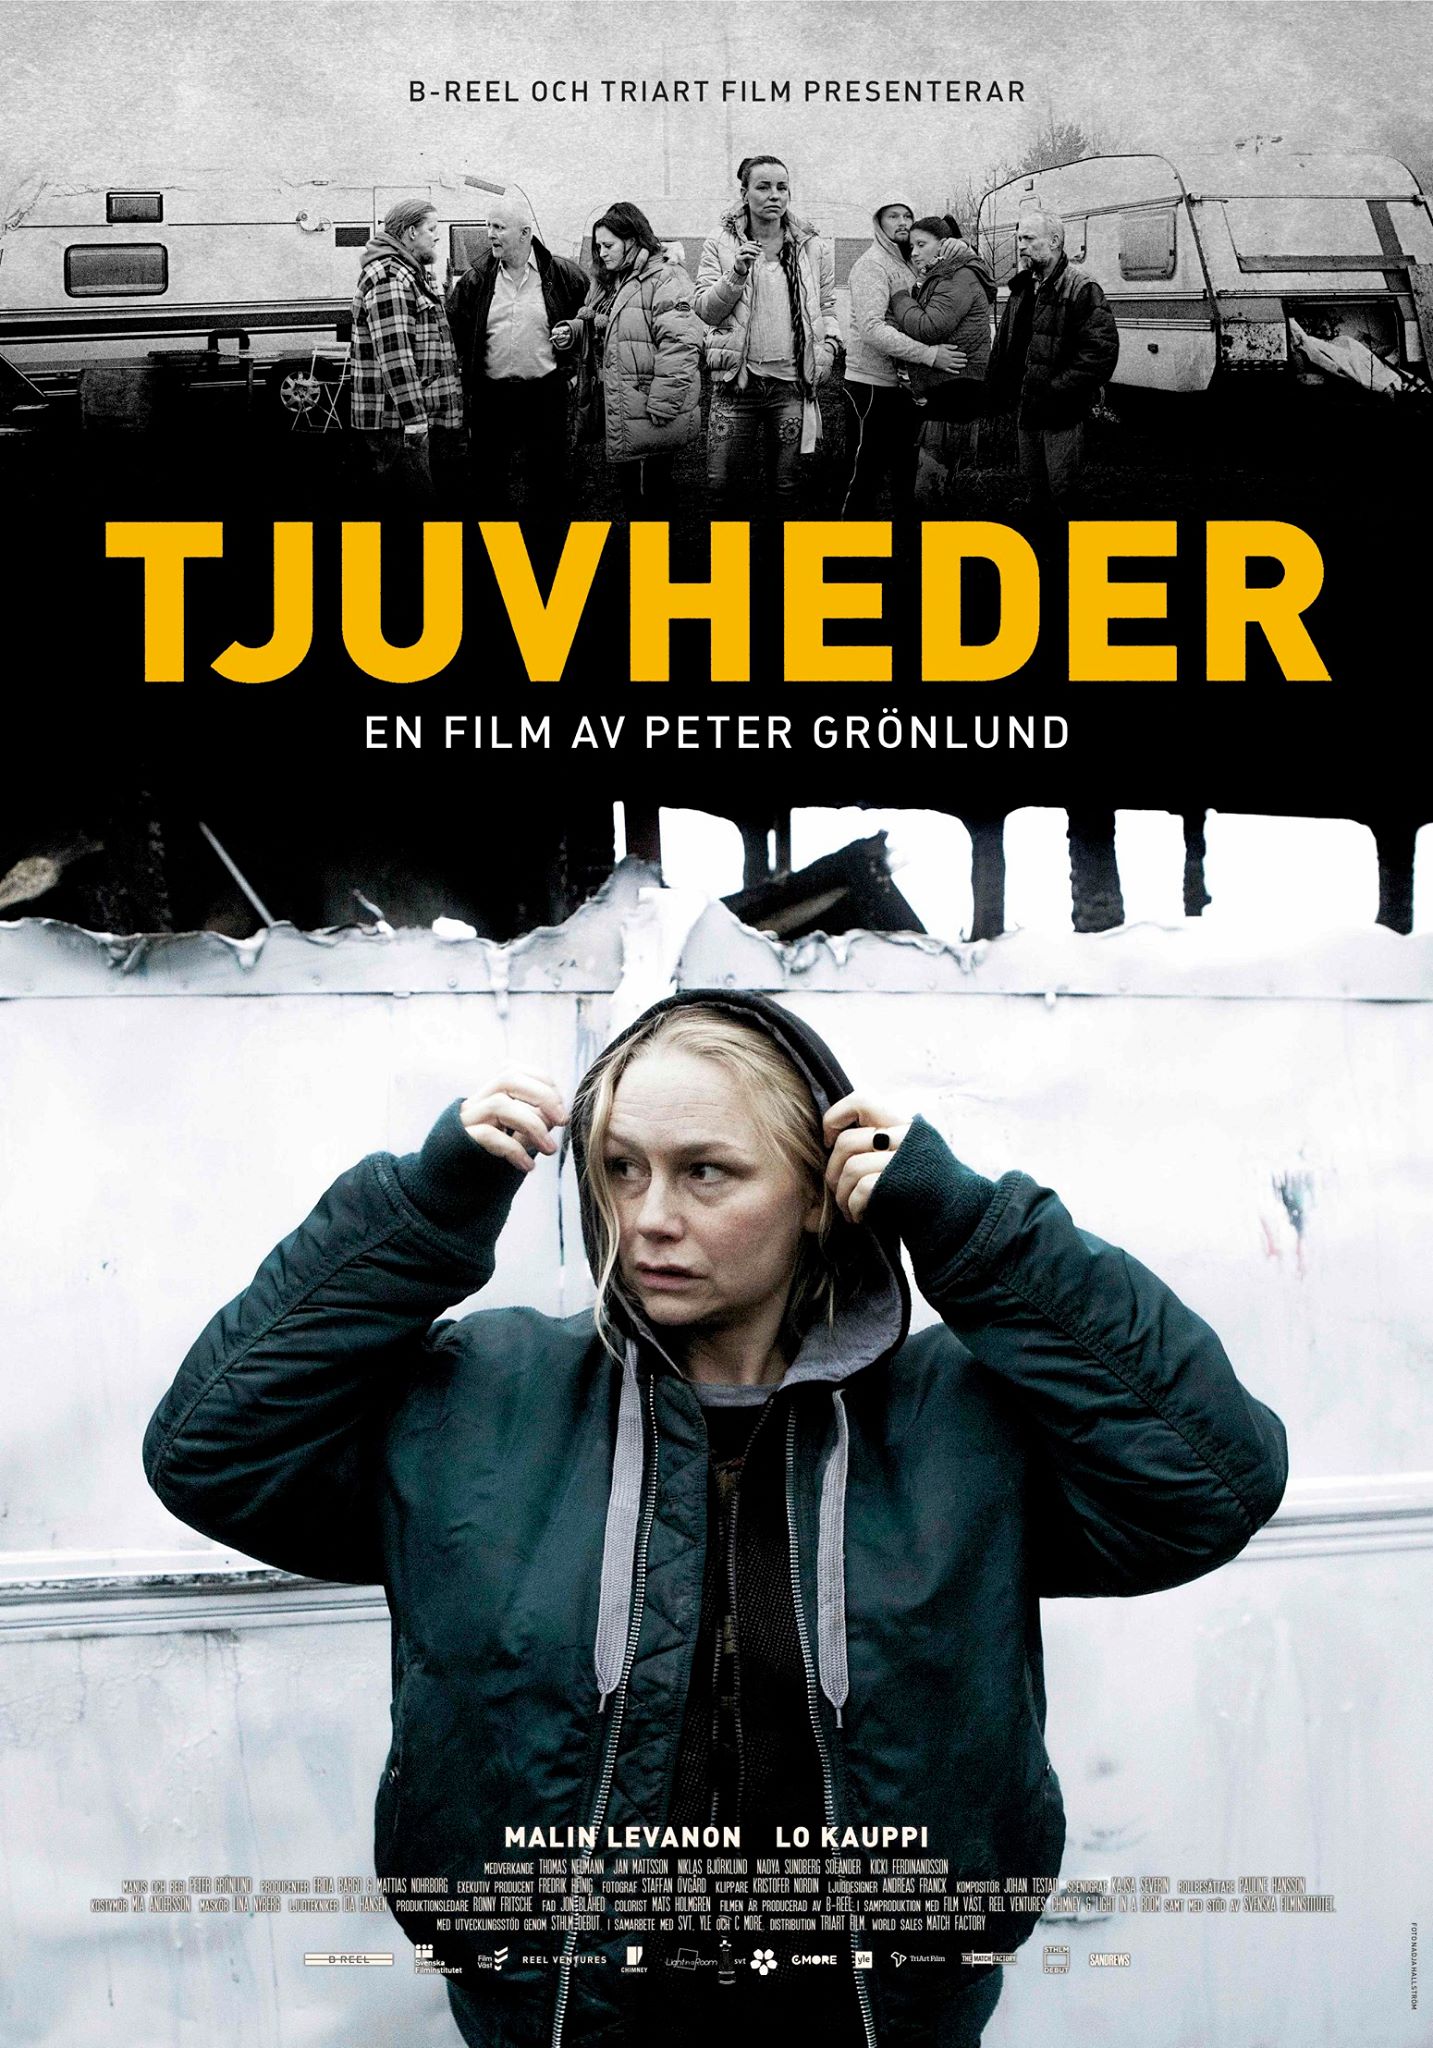 Drifters (org title Tjuvheder) premiere 16 October 2015.